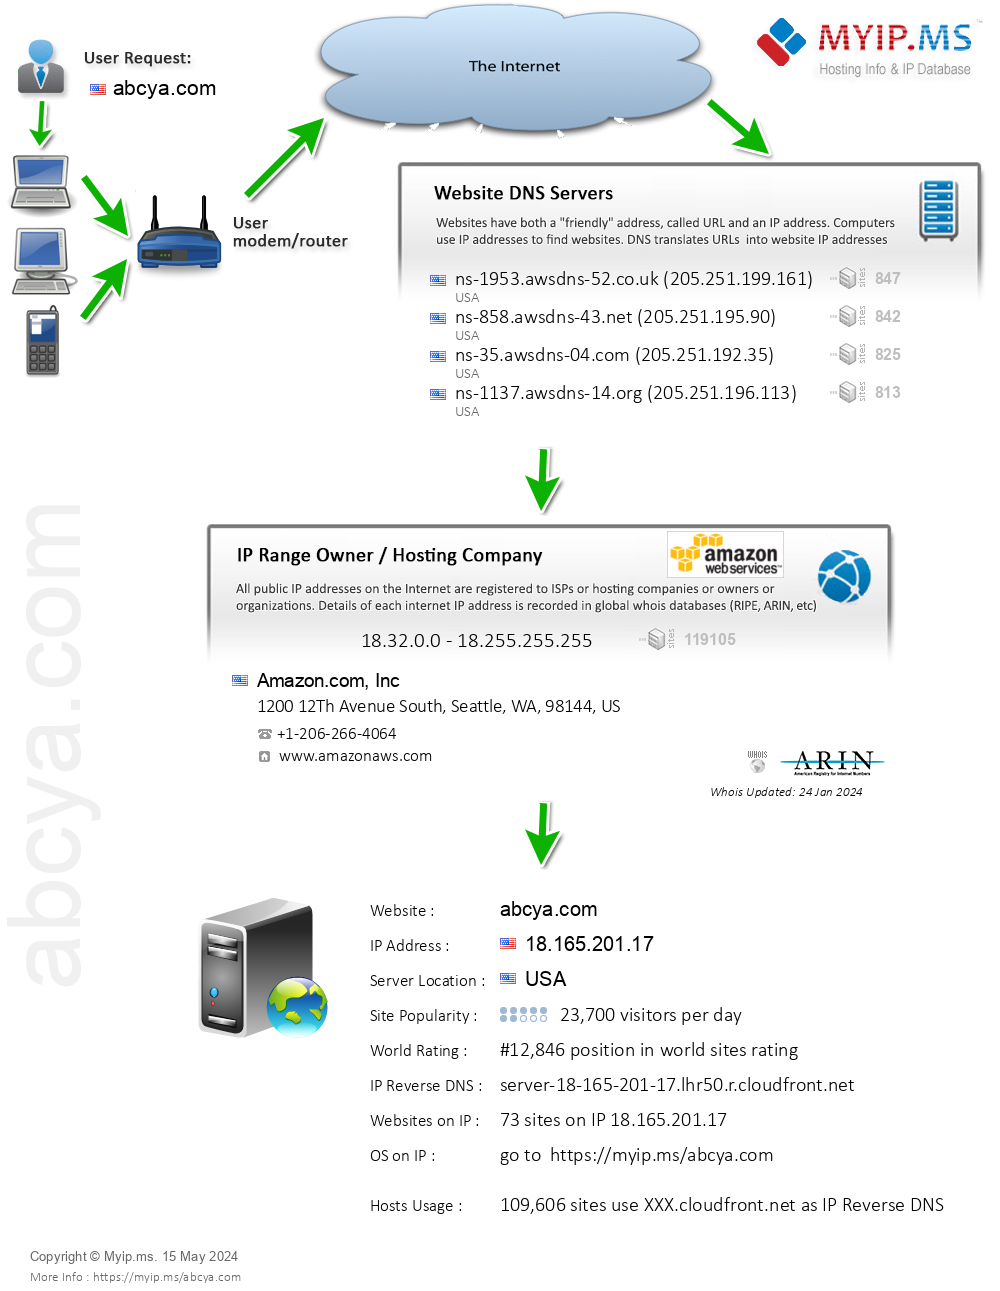 Abcya.com - Website Hosting Visual IP Diagram